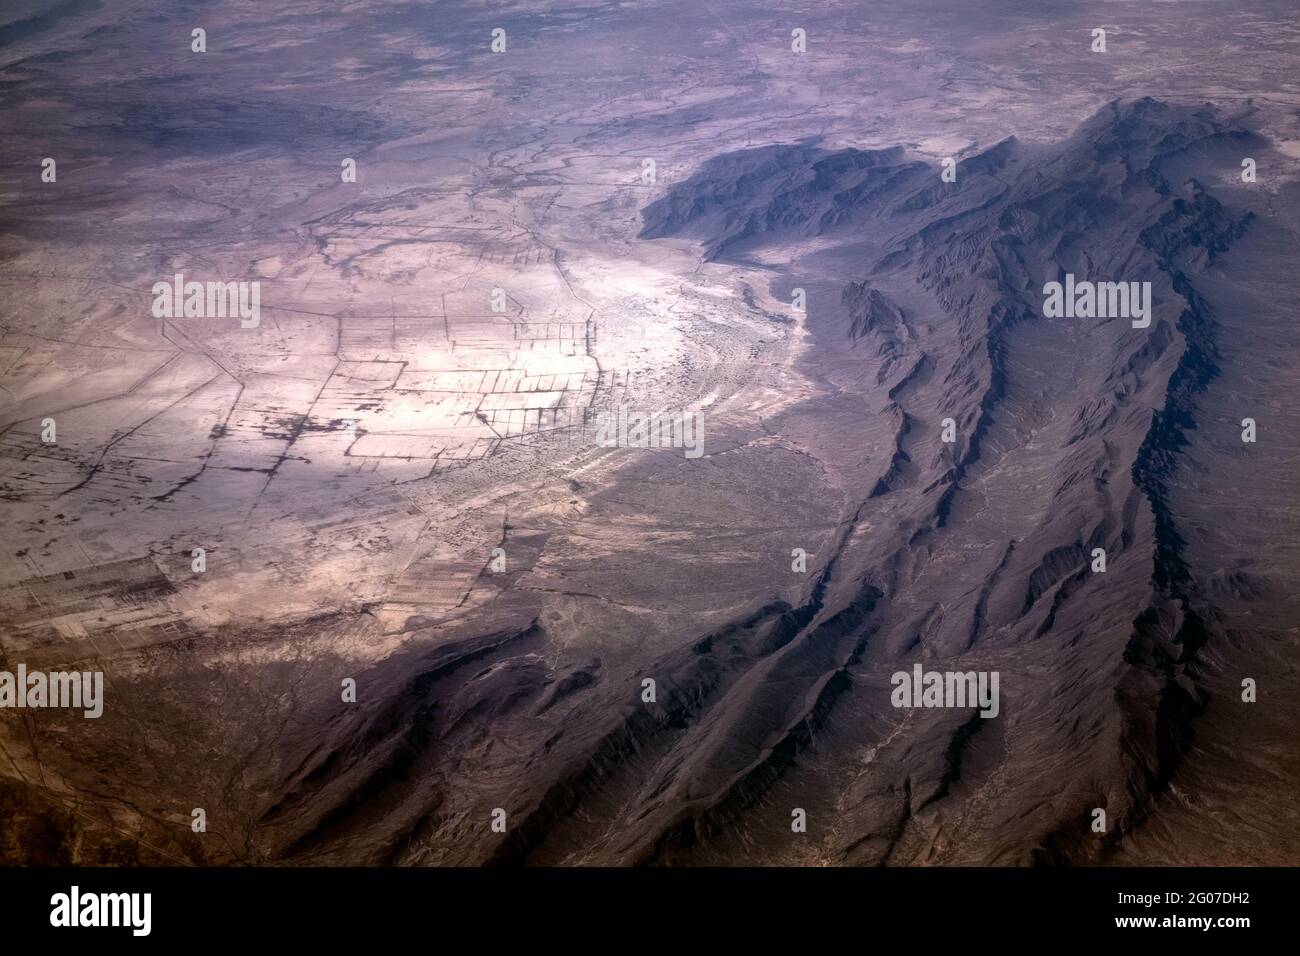 Vue aérienne des routes de terre dans le désert, survolant la Sierra Madre Oriental, Coahuila, nord du Mexique Banque D'Images